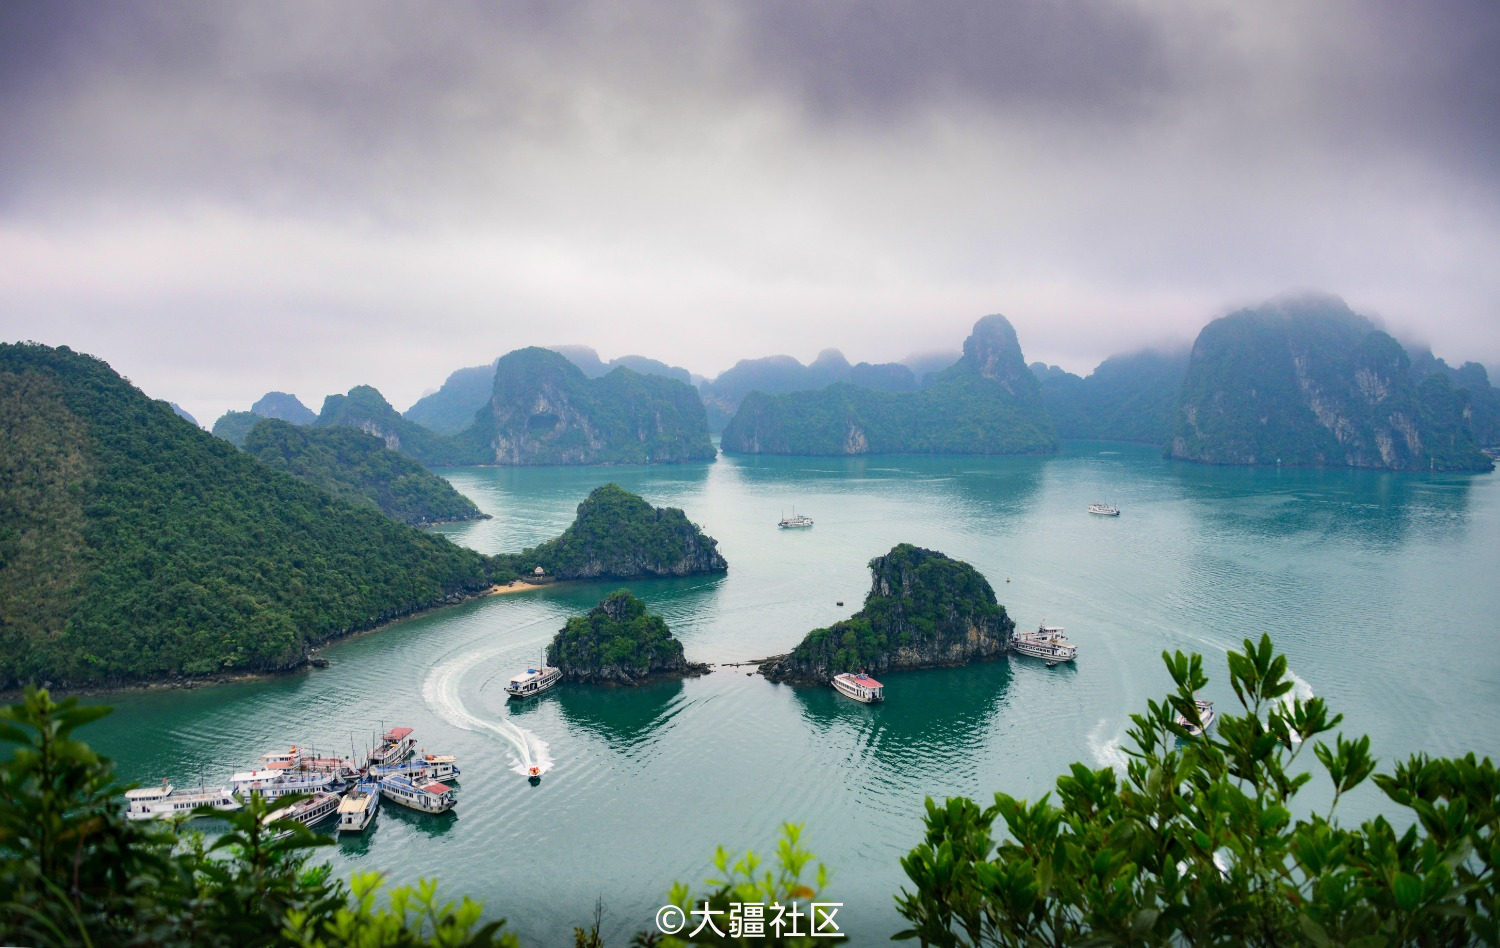 中国桂林-越南下龙湾黄金旅游线跨国自驾游正式开通 | TTG China